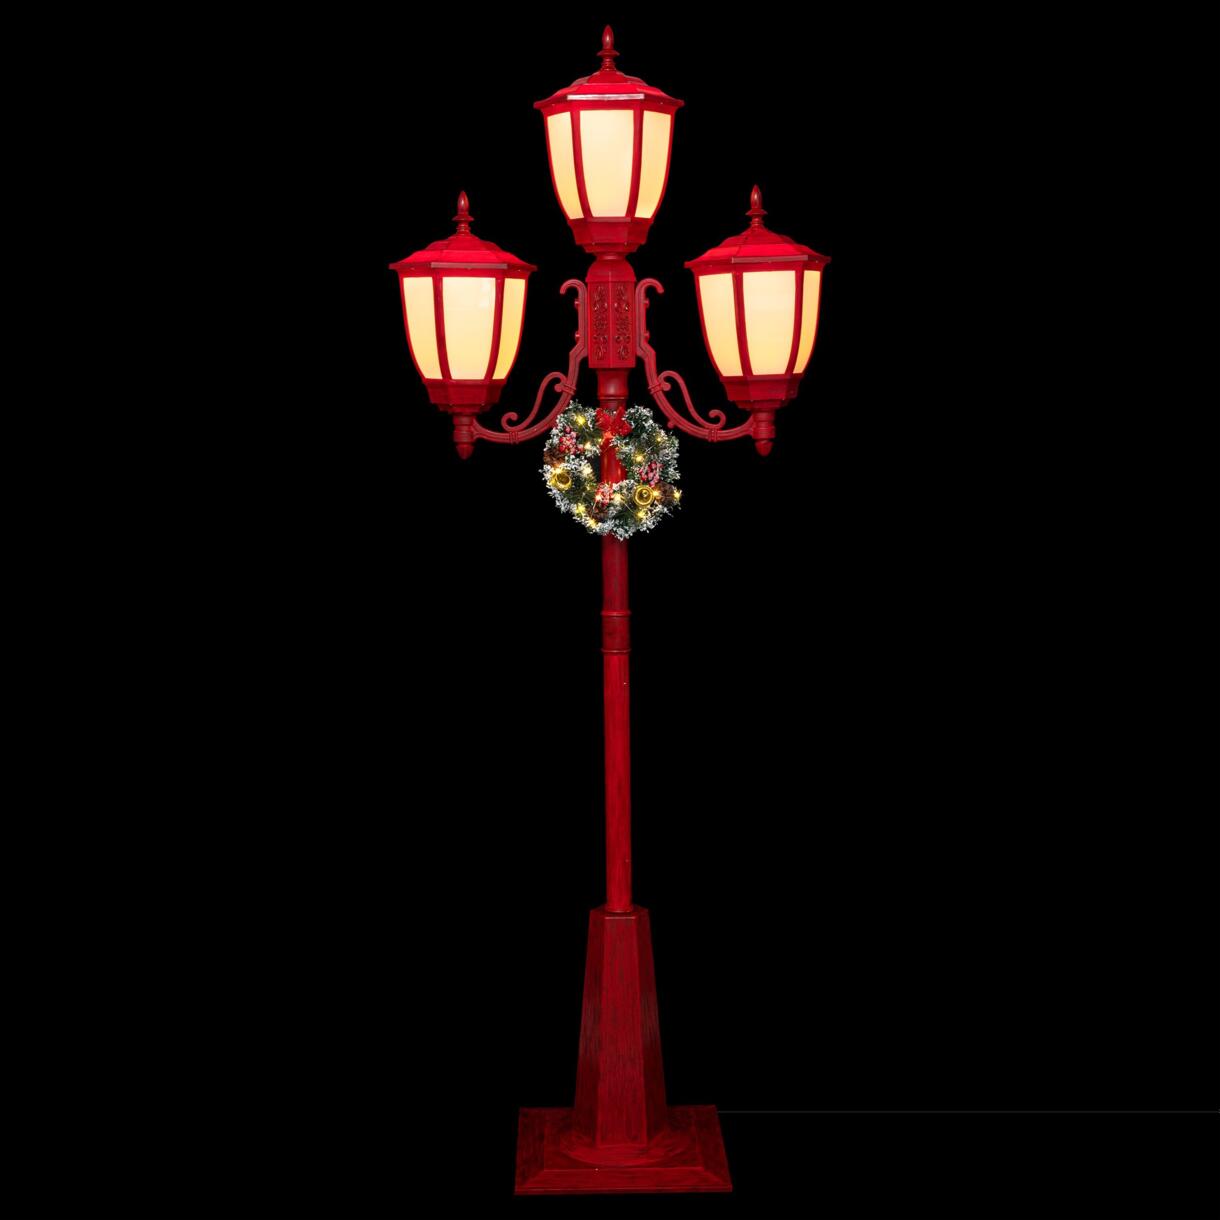 Lampadario illuminato  3 lanterne Rosso/Bianco